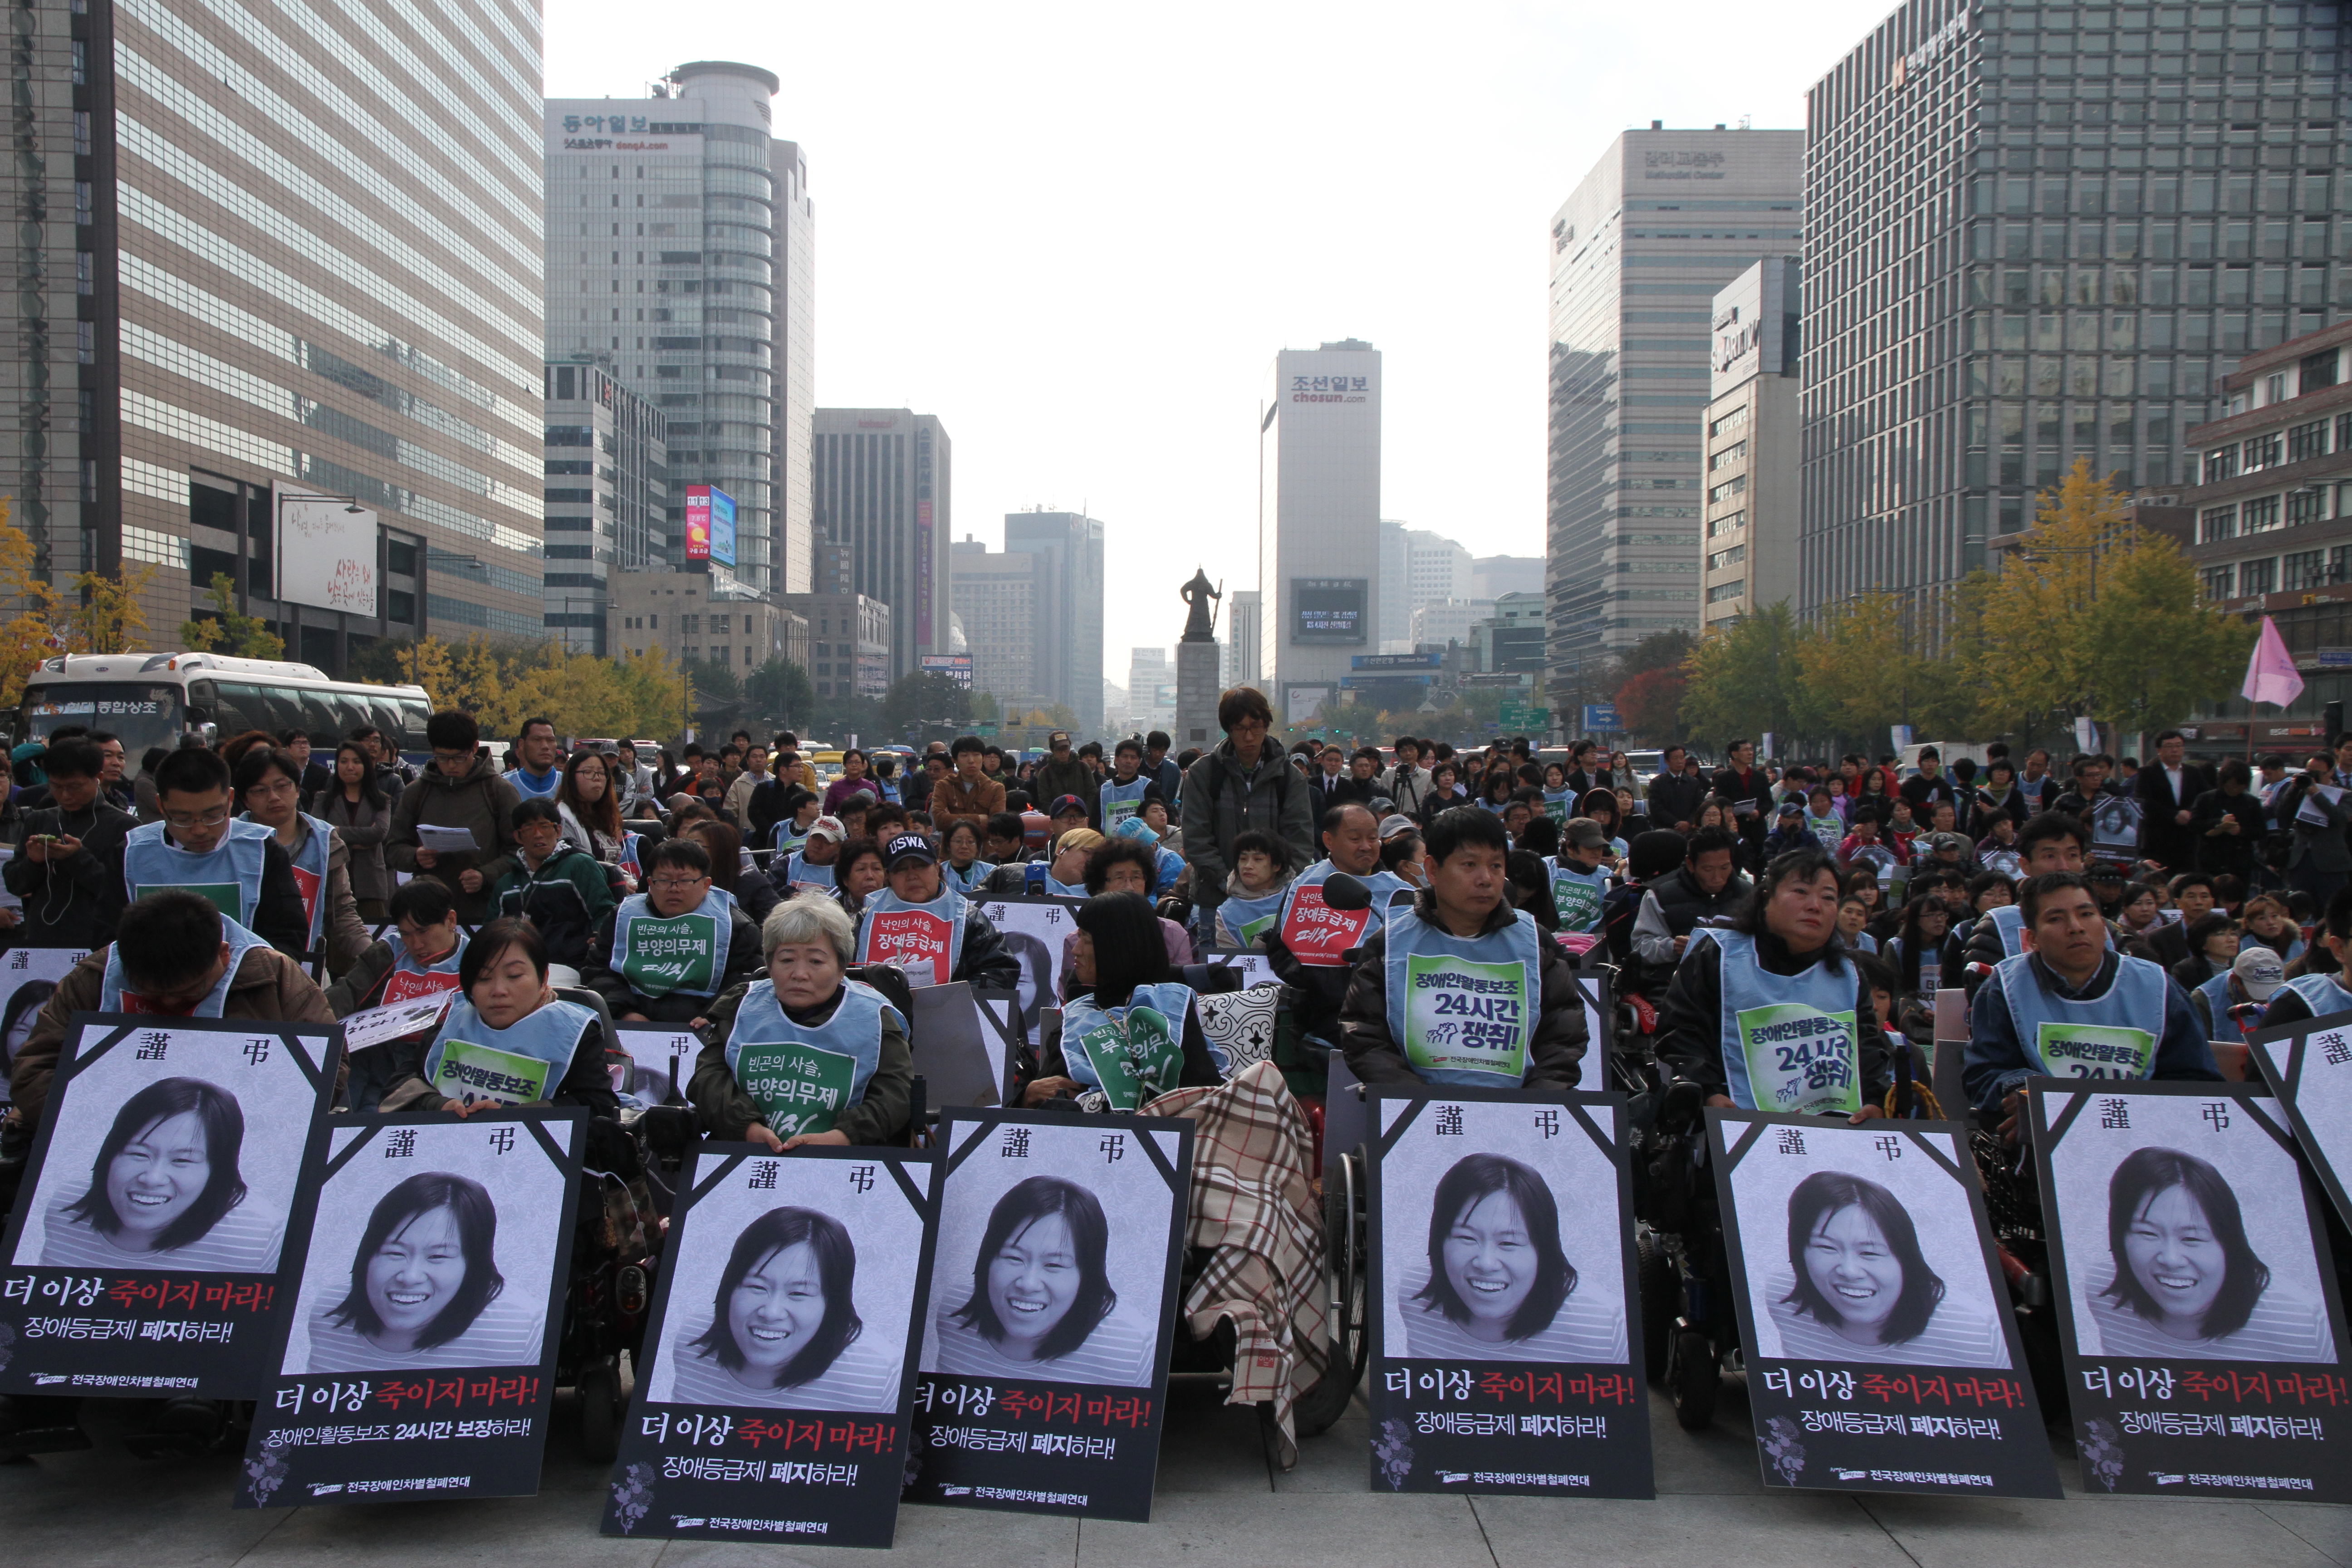  2012년 12월, 광화문광장에서 화마에 휩쓸려 목숨을 잃은 장애등급제 희생자 김주영을 추모하기위해 모여있다.
